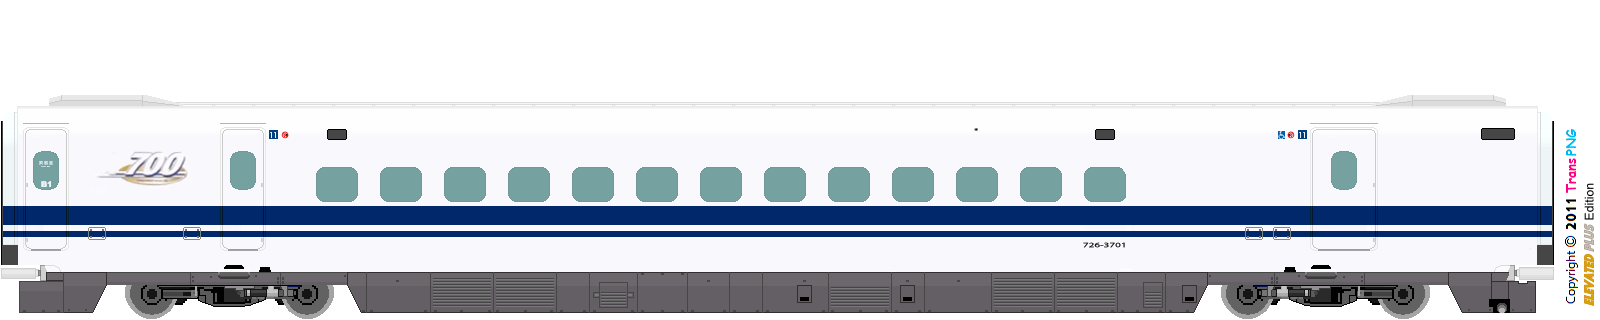 [9012] West Japan Railway 52287580316_1b9256eabb_o